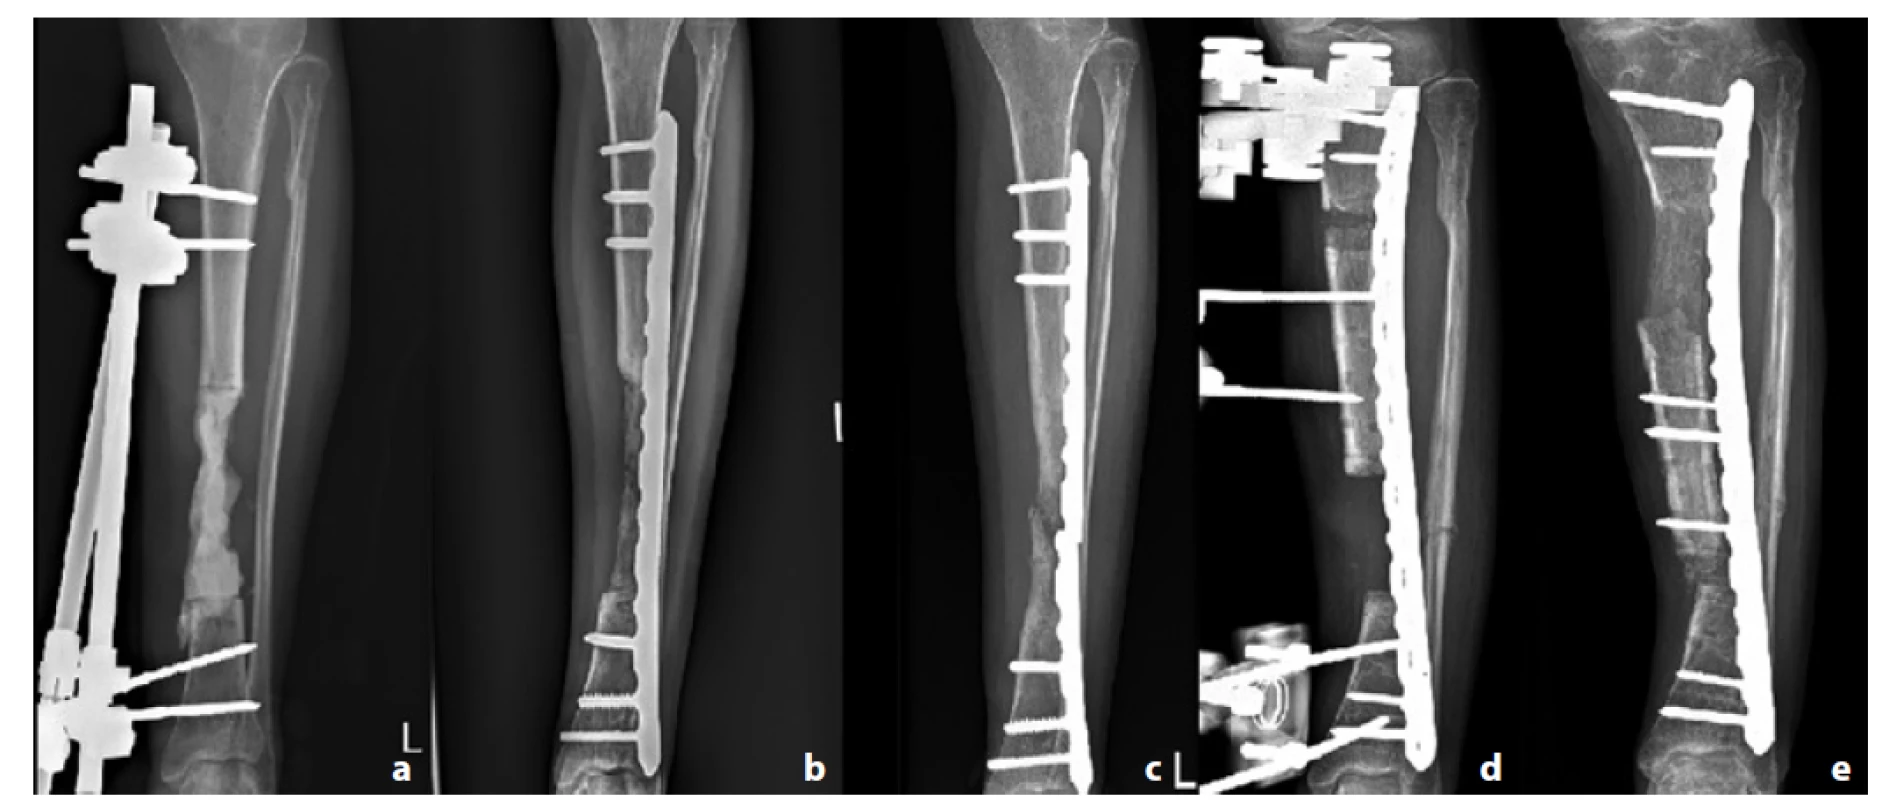 Pacient č. 7; a – PMMA spacer v místě defektu; b – 2 měsíce od spongioplastiky; c – patrná refraktura a selhání dlahy;
d – zvolena technika segmentálního kostního transportu; e – segmentální transport při dosažení kontaktu kostí<br>
Fig. 3: Patient 7; a – PMMA spacer inside the bone defect; b – 2 months after bone grafting; c – refracture and implant failure;
d – segmental bone transport applied; e – segmental bone transport after reaching the docking site.